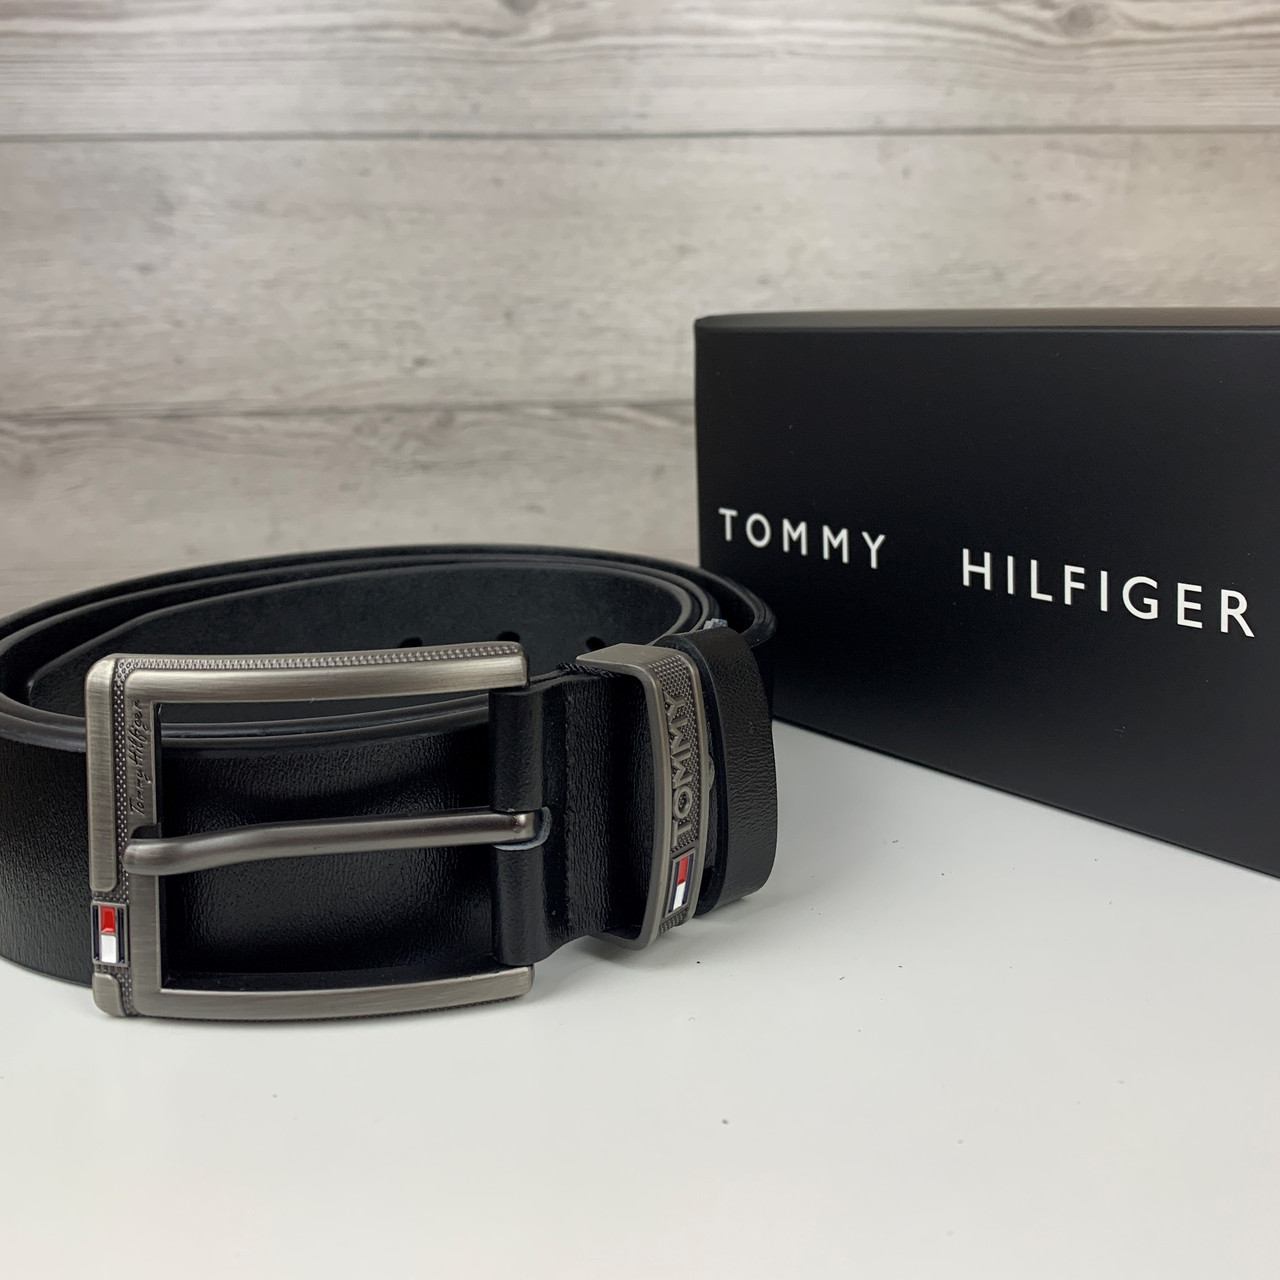 

Мужской ремень Tommy Hilfiger, брендовый классический ремень с пряжкой, качественный пояс из натуральной кожи, Черный